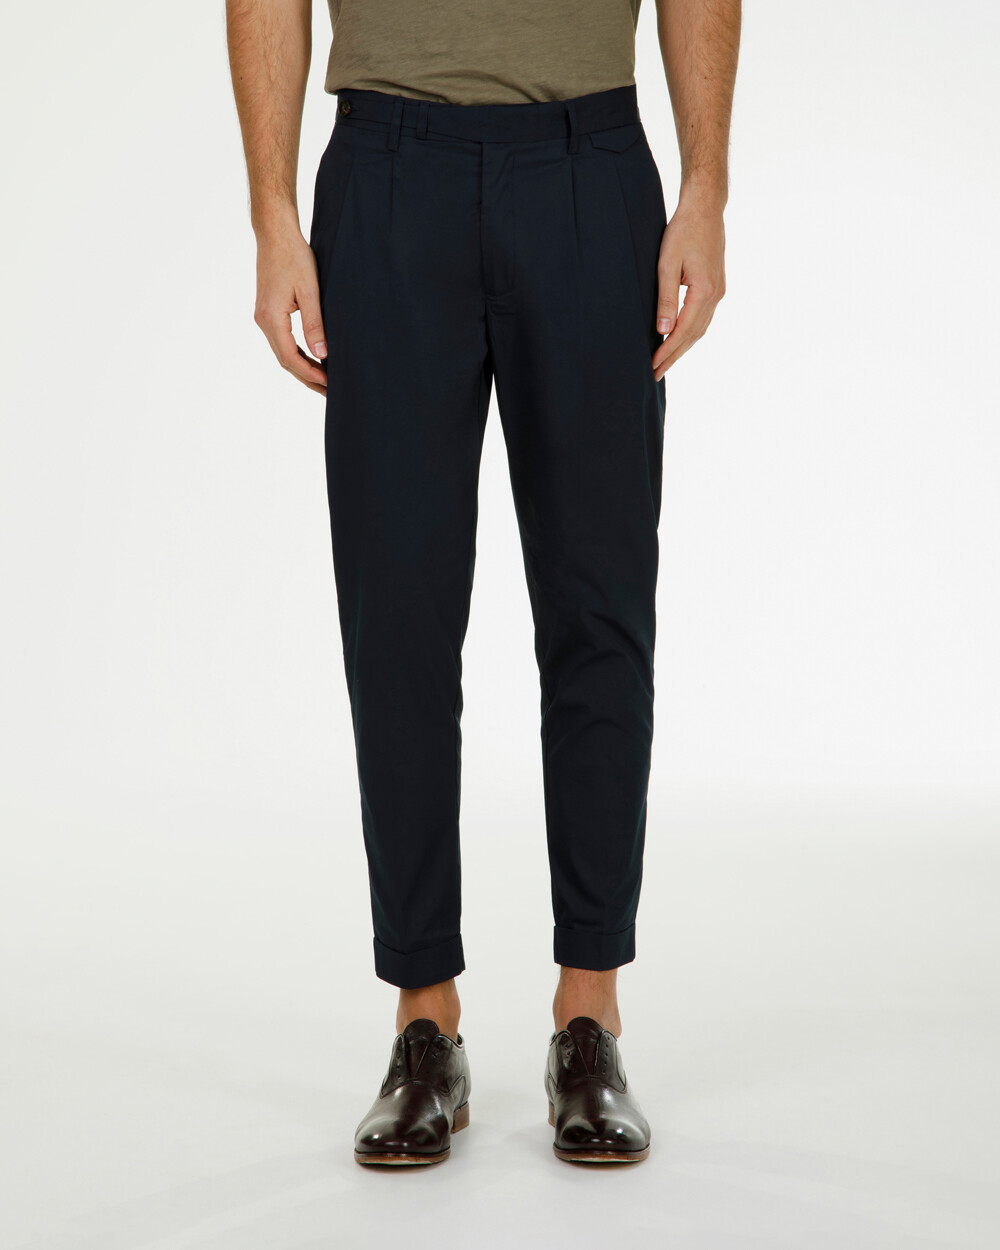 Pantalone long stand waist – Markup Italia